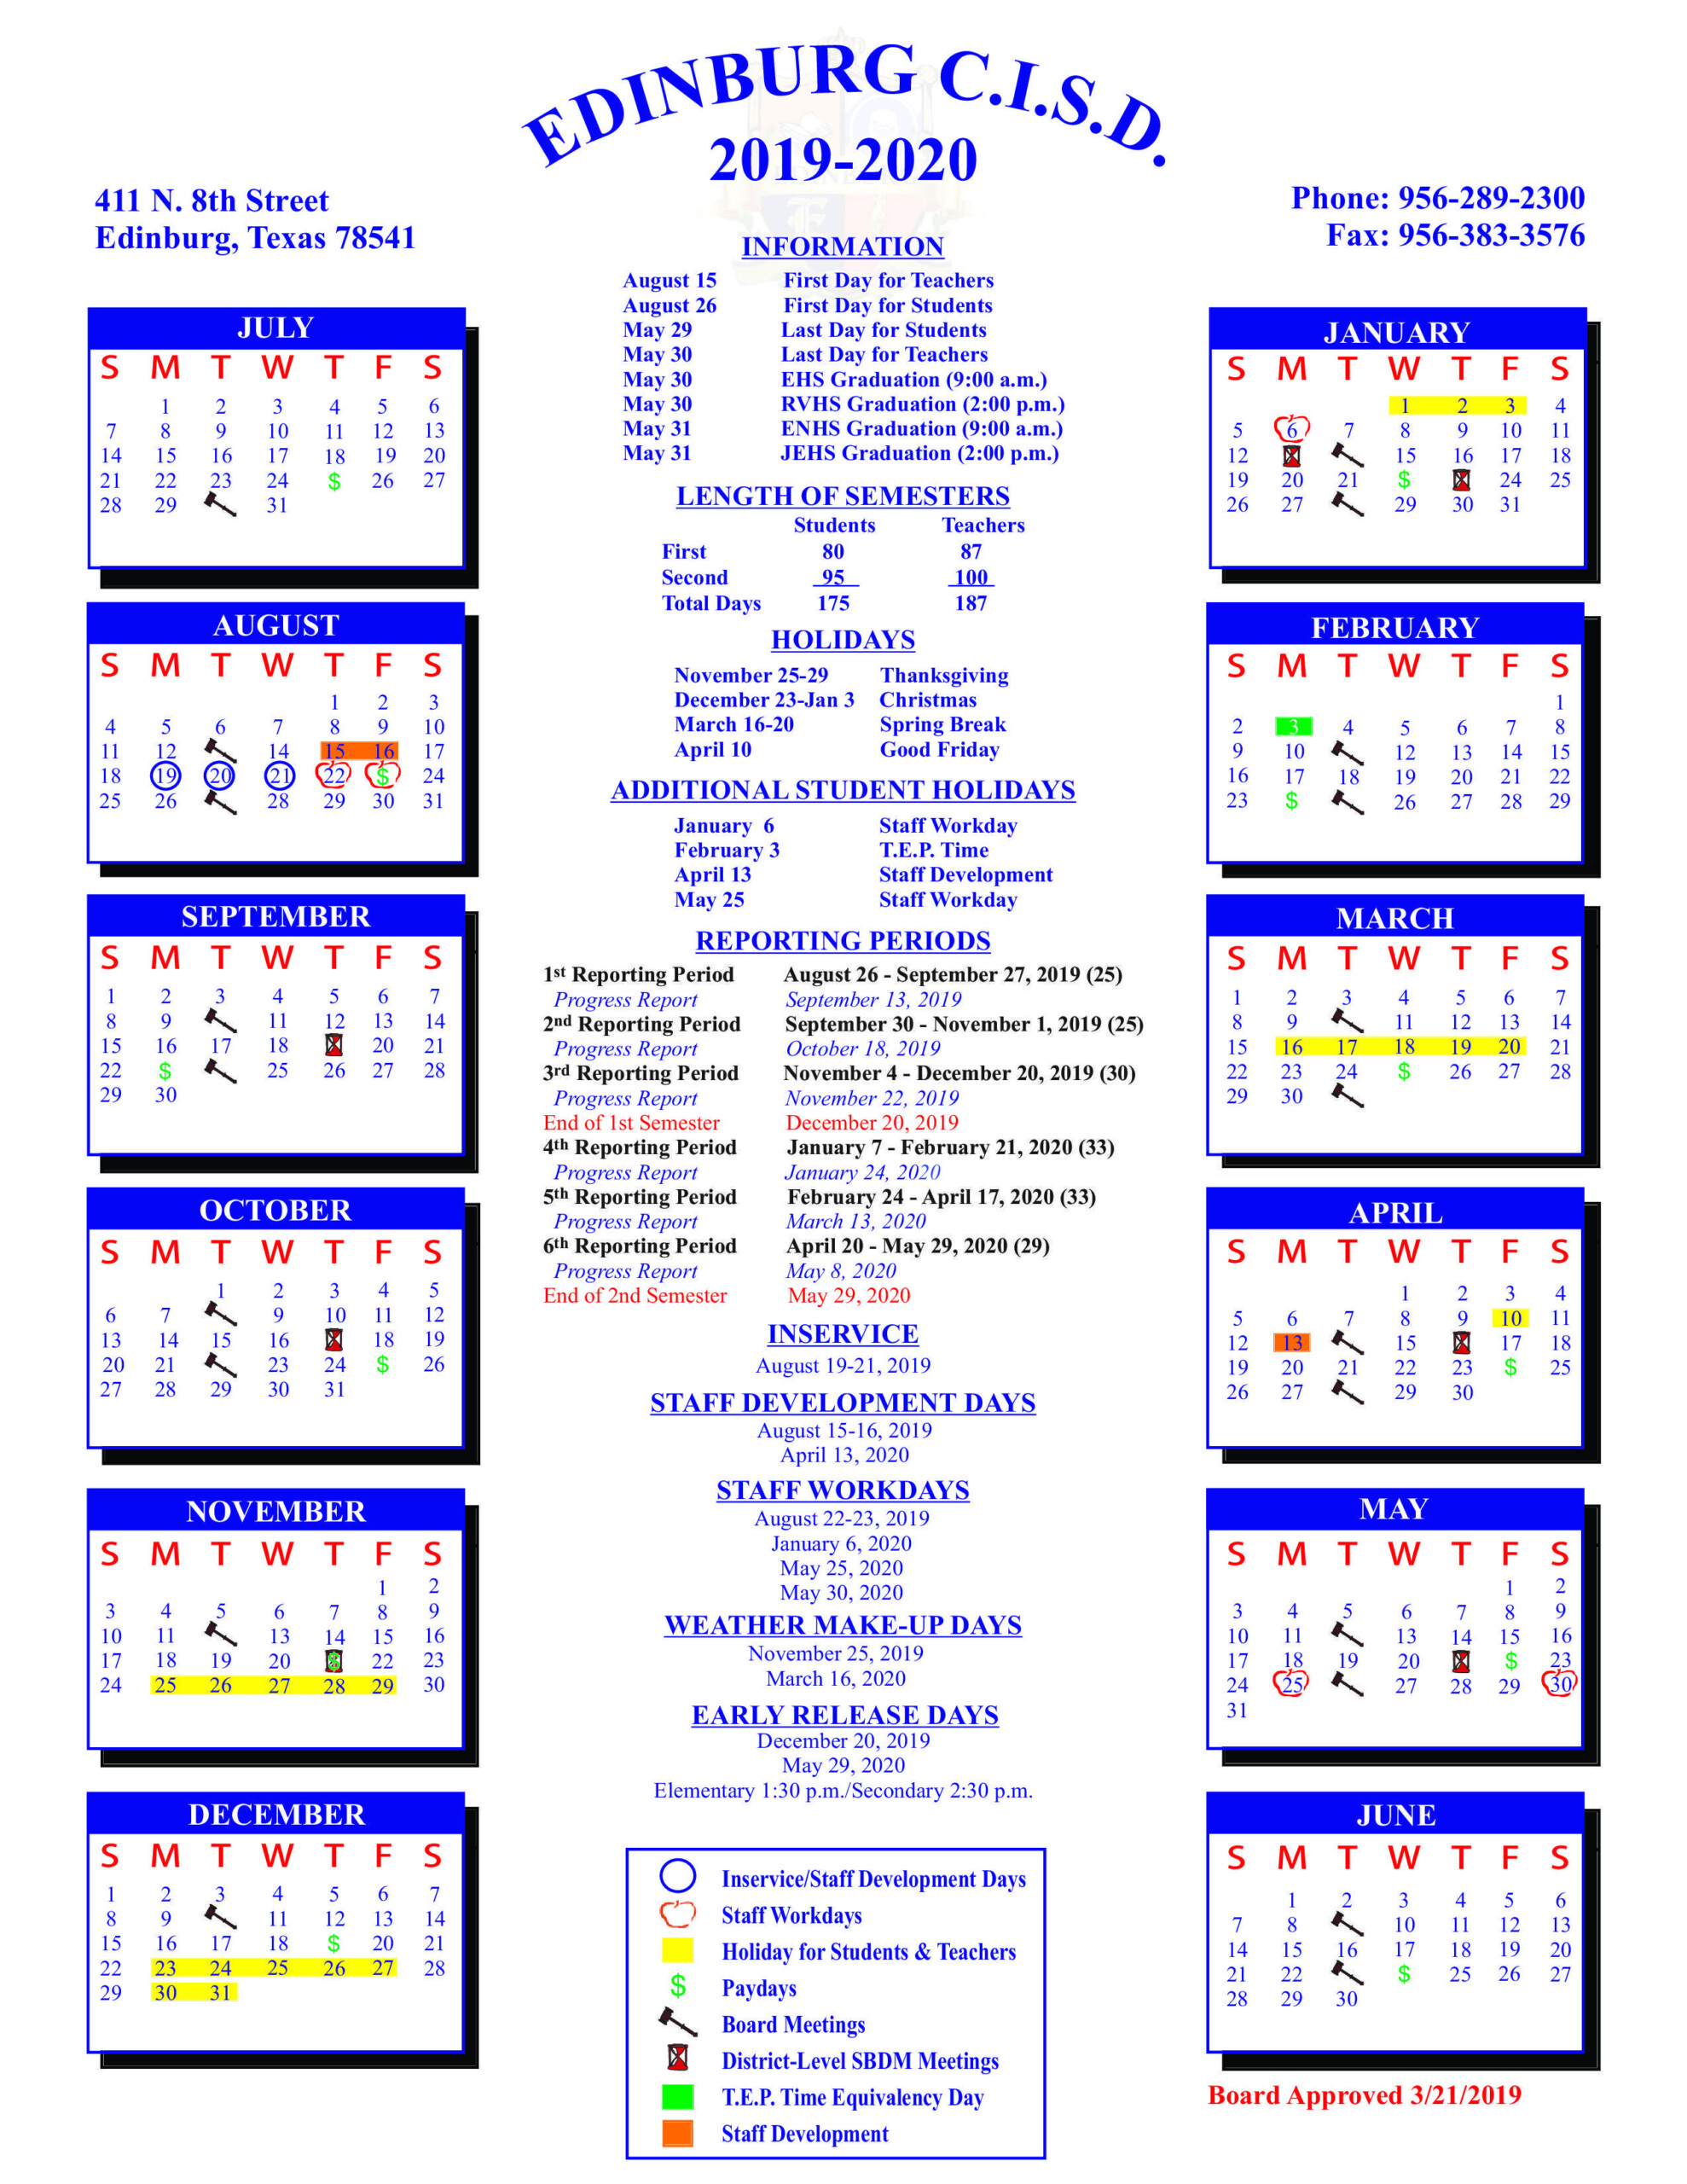 Ecisd Calendar